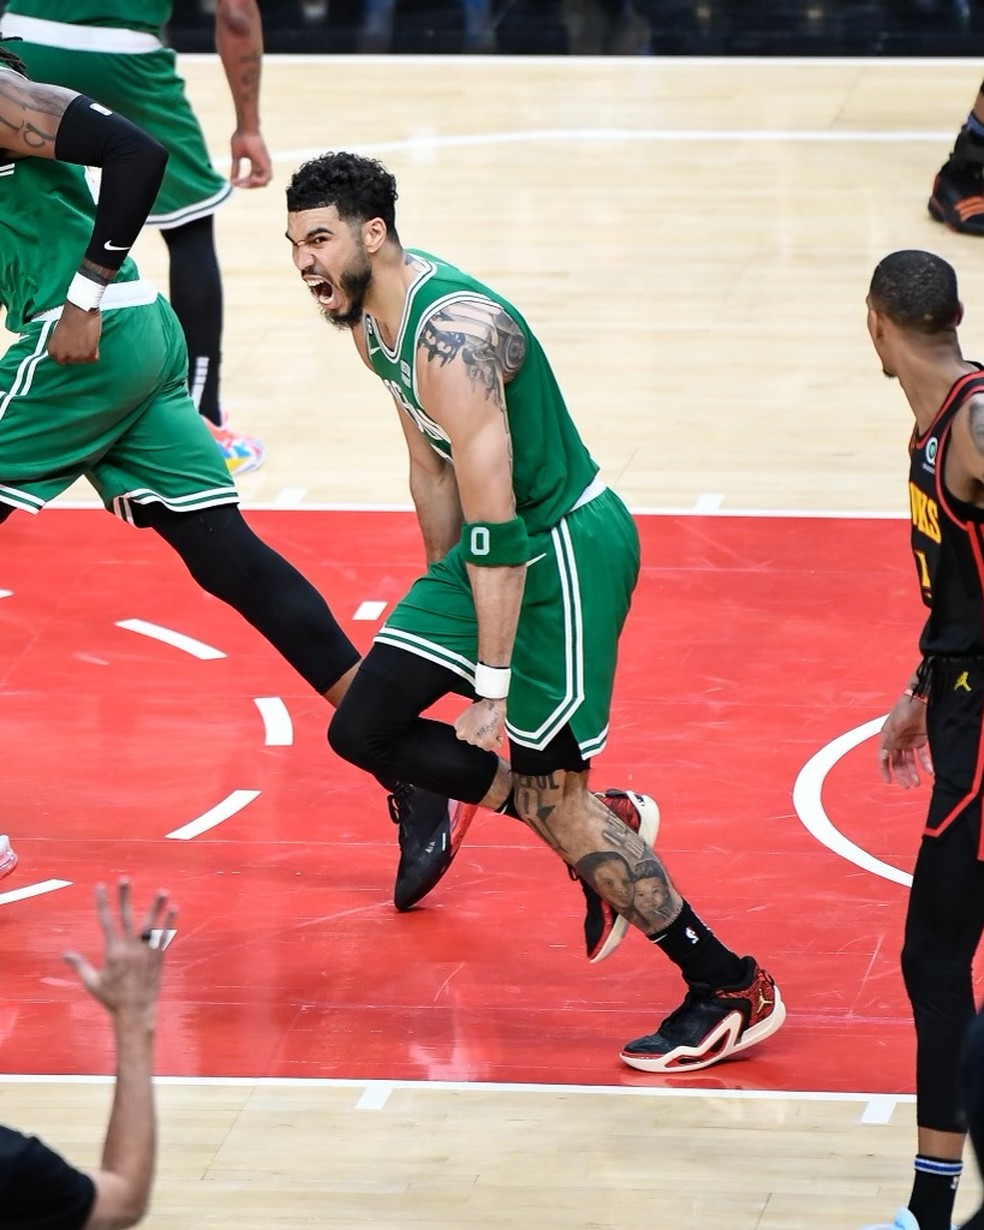 Boston Celtics: A Torcida Brasileira nas Quadras Americanas